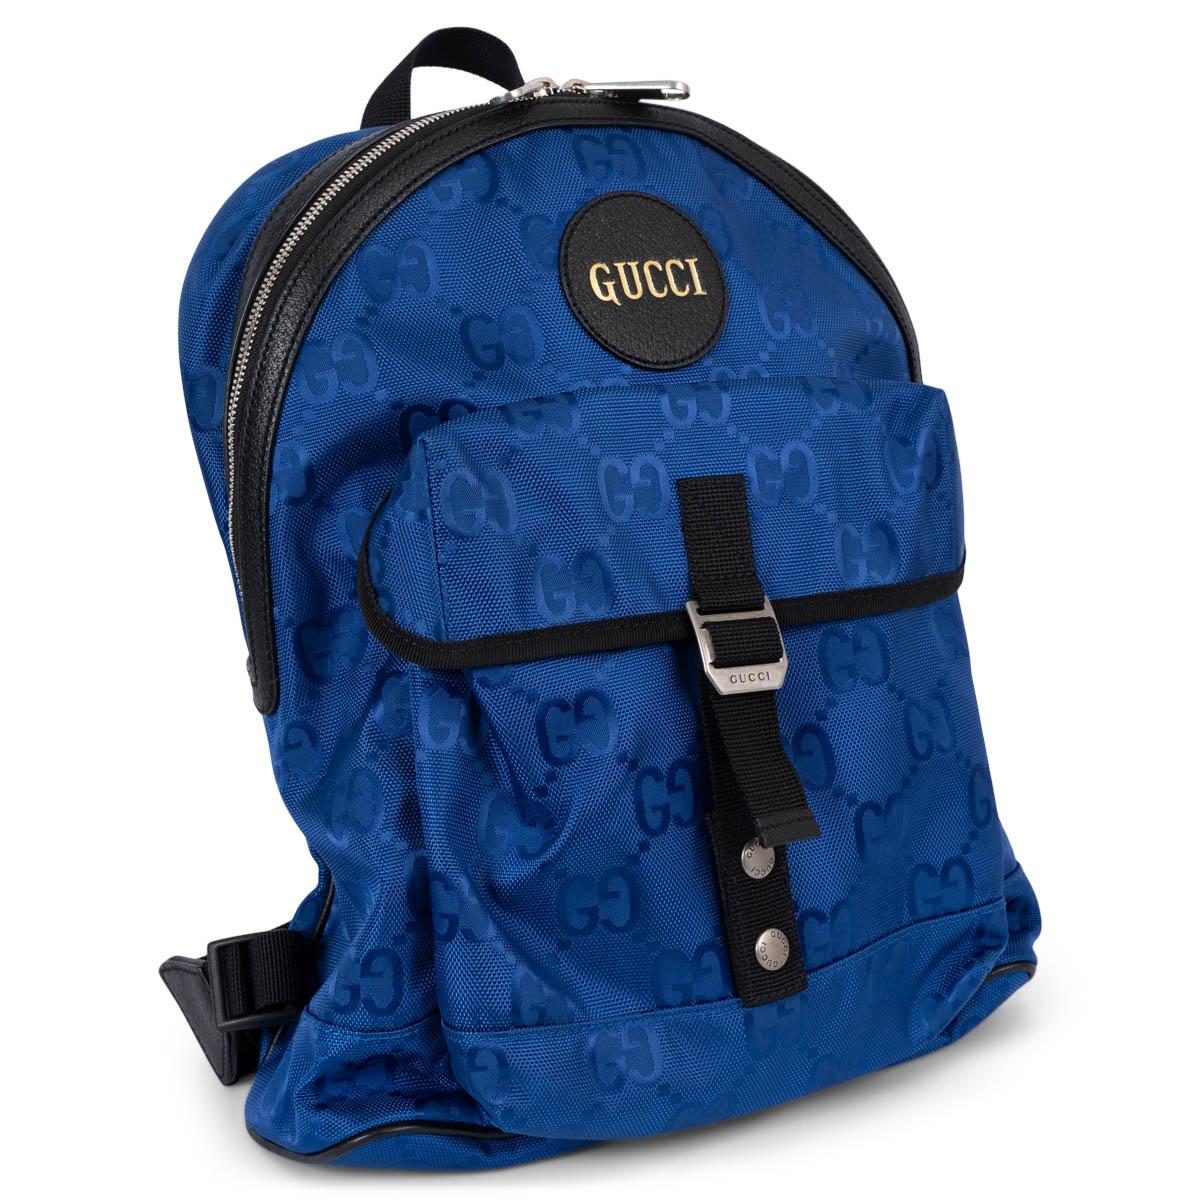 100% authentischer Gucci Off the Grid Rucksack aus königsblauem ECONYL® Canvas mit schwarzem Leder und Nylonbesatz. Das Design zeigt das klassische Monogram-Muster, silberfarbene Hardware, ein Logo-Patch auf der Vorderseite mit goldfarbenem